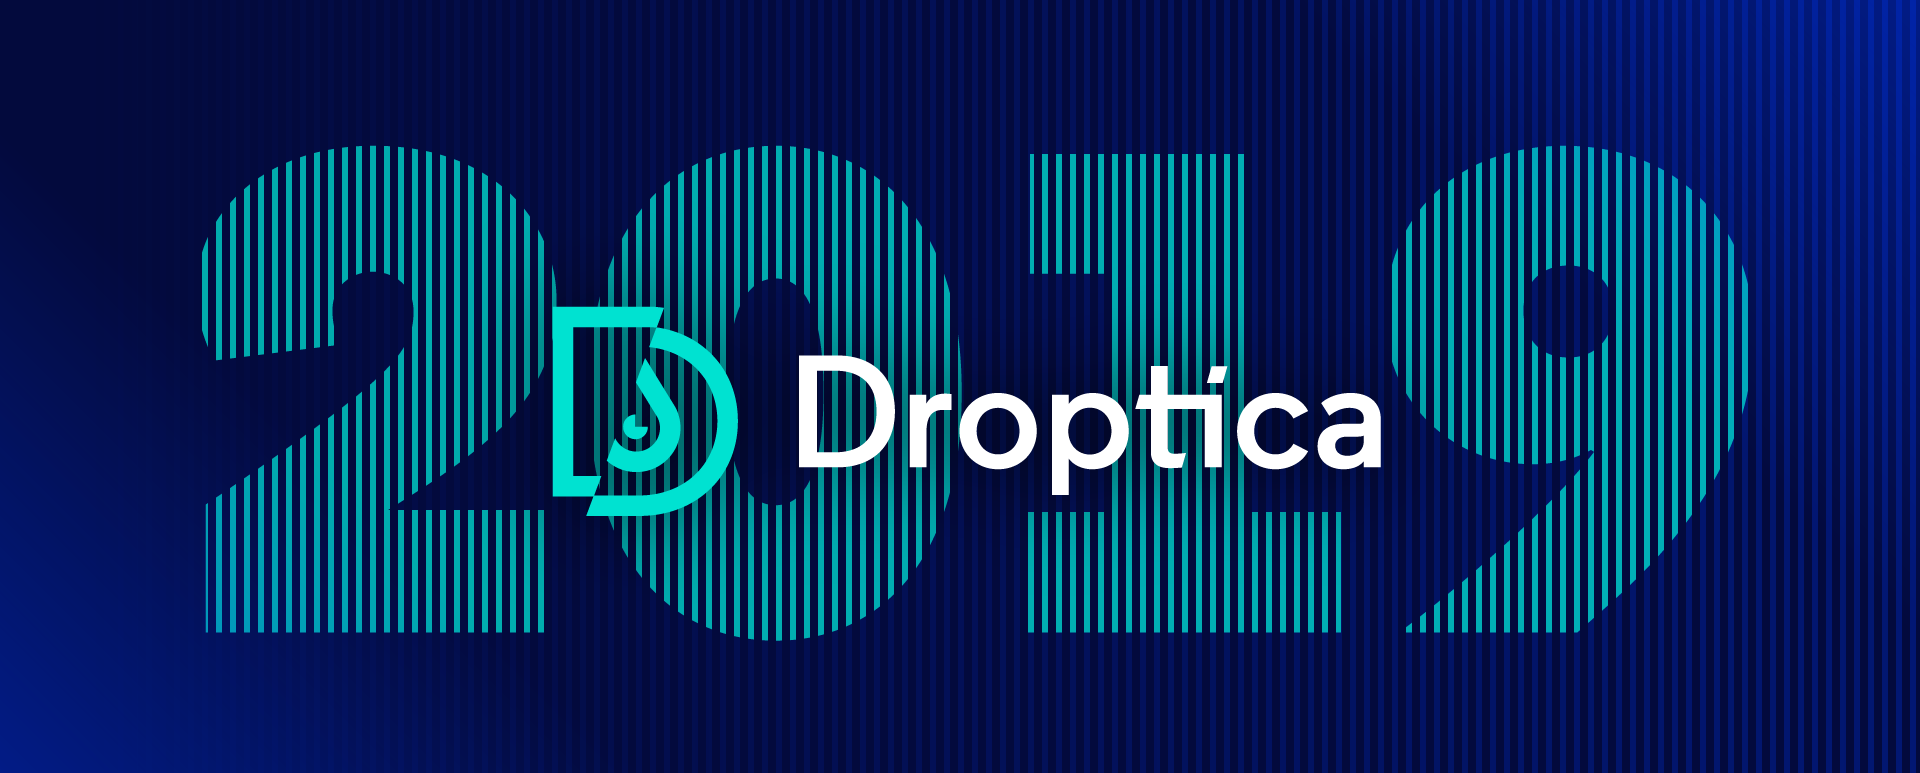 droptica2019